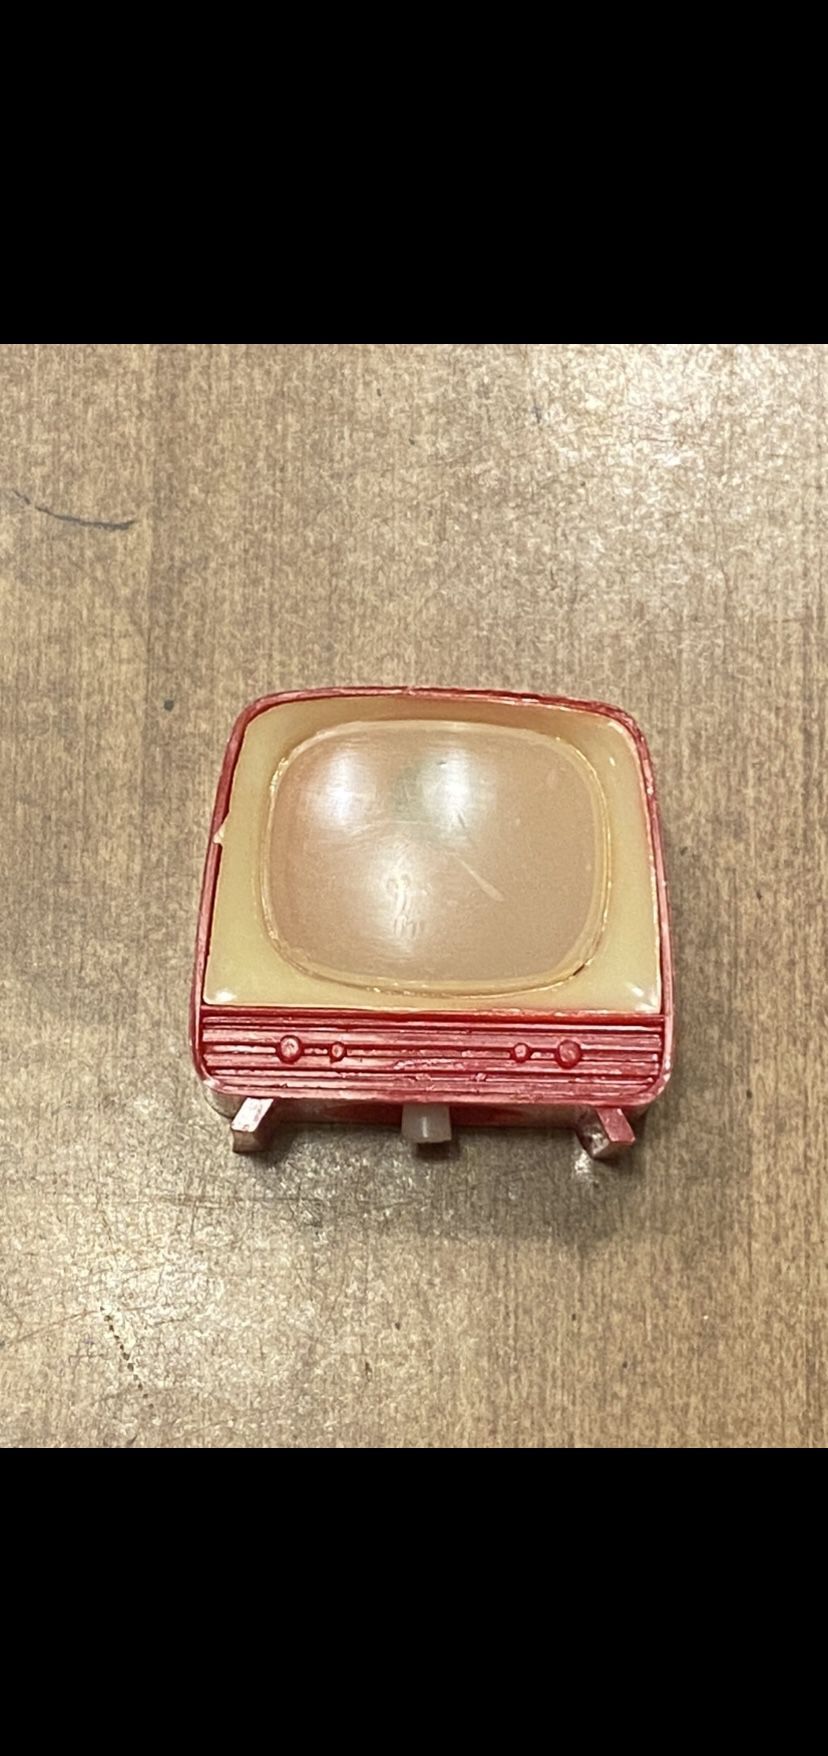 Vintage Mini TV Viewer Toy (READ DESCRIPTION)